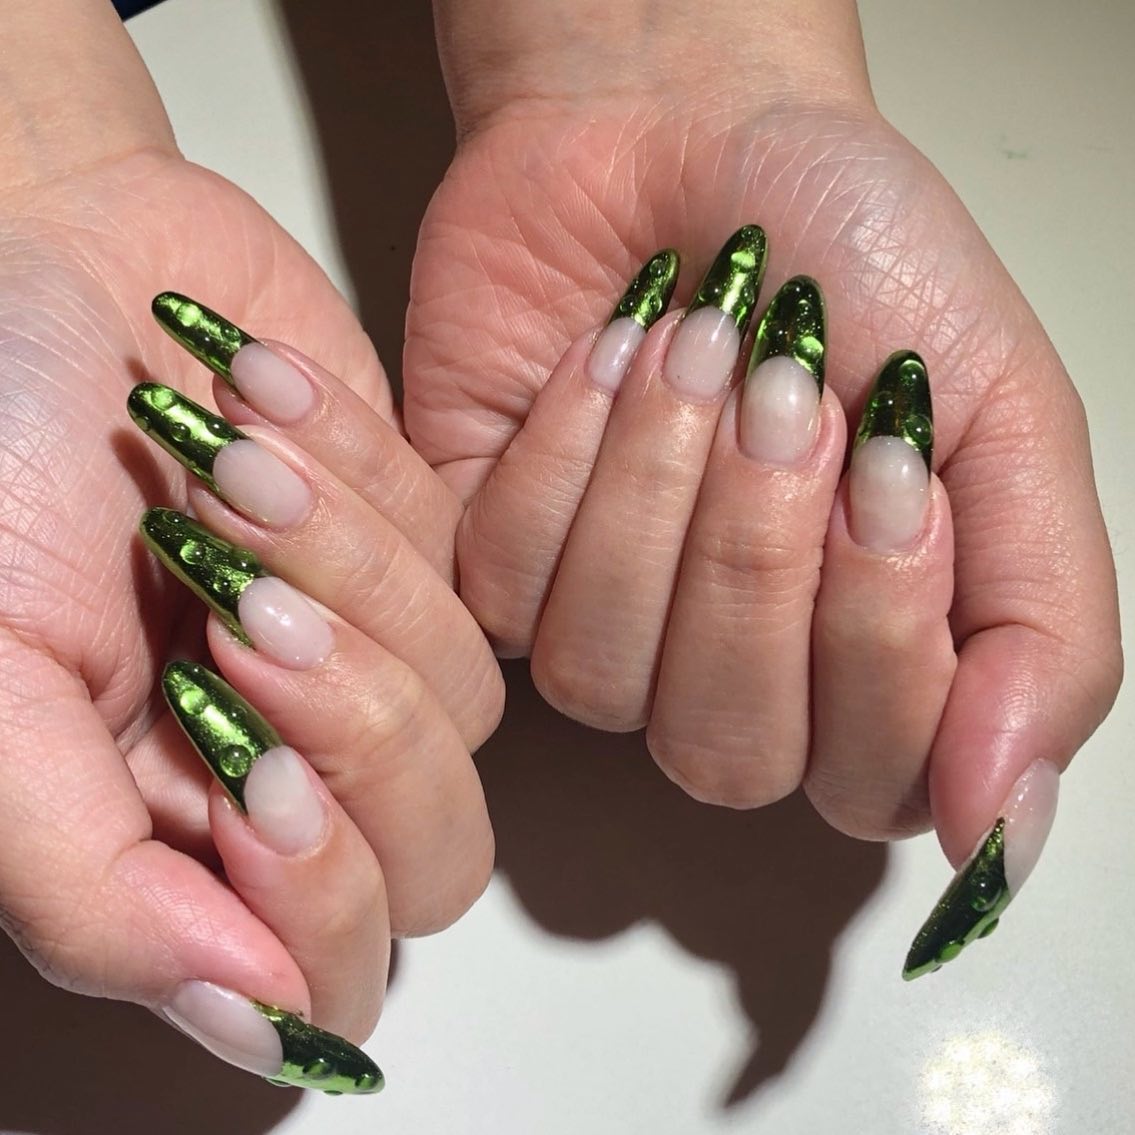 Puedes usar esmeraldas en tus uñas con esta gran mani. Las puntas de uñas esmeralda llevarán tu manicura a un nuevo nivel.